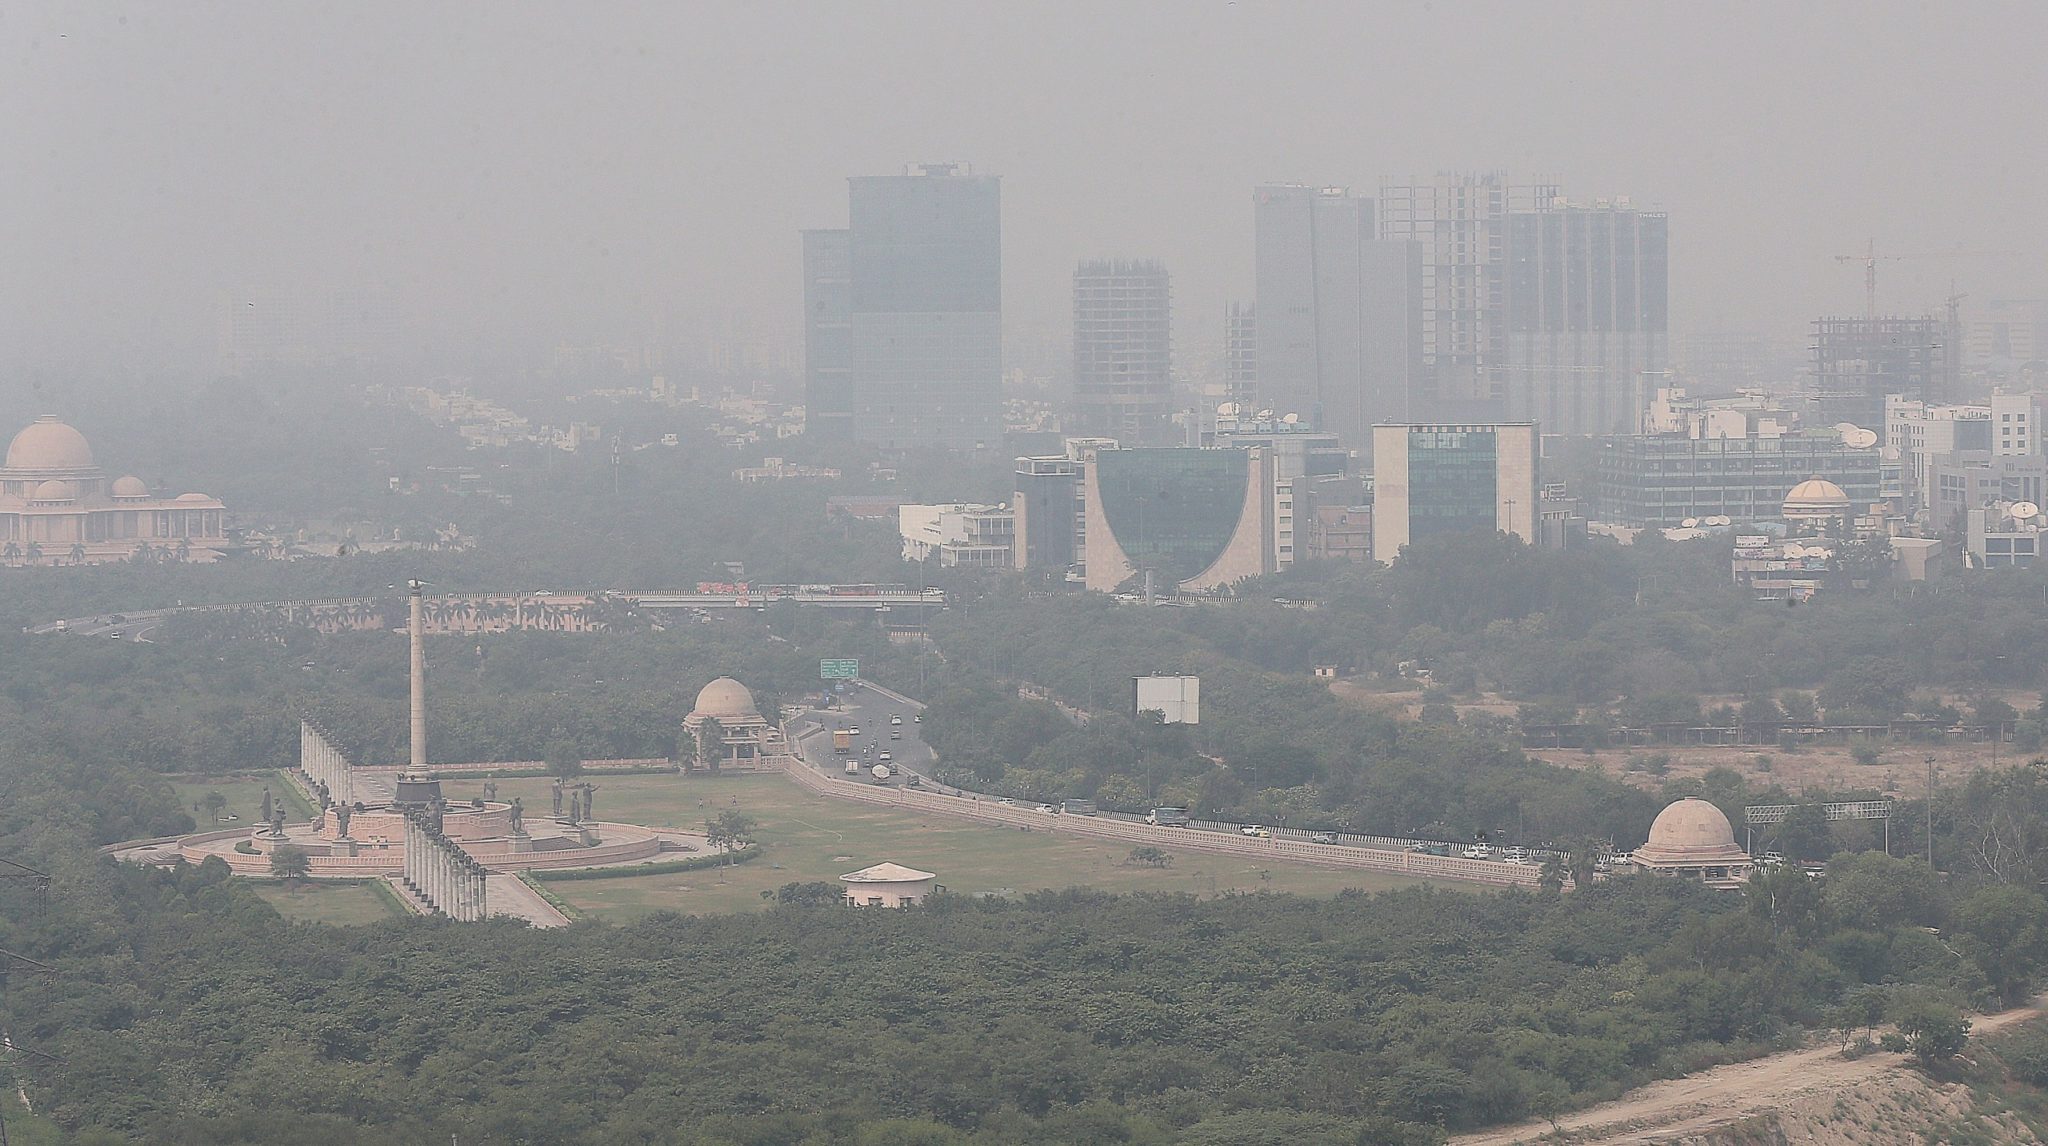 La capital de India suspendió parte de sus actividades debido a la alta contaminación del aire